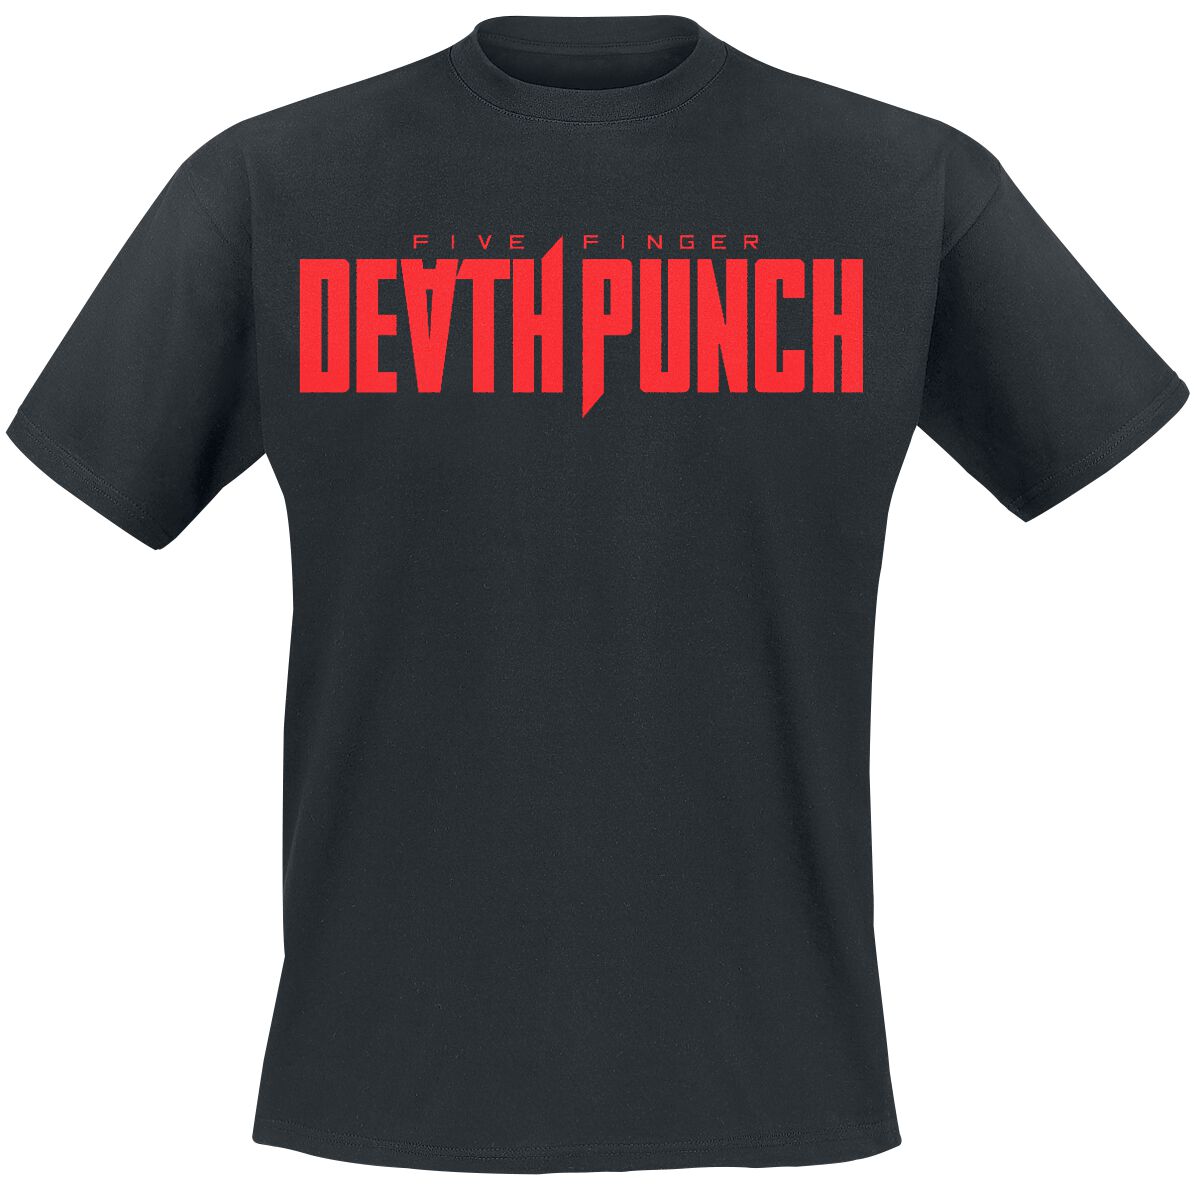 Five Finger Death Punch T-Shirt - Afterlife Kanji - S bis 3XL - für Männer - Größe S - schwarz  - Lizenziertes Merchandise!